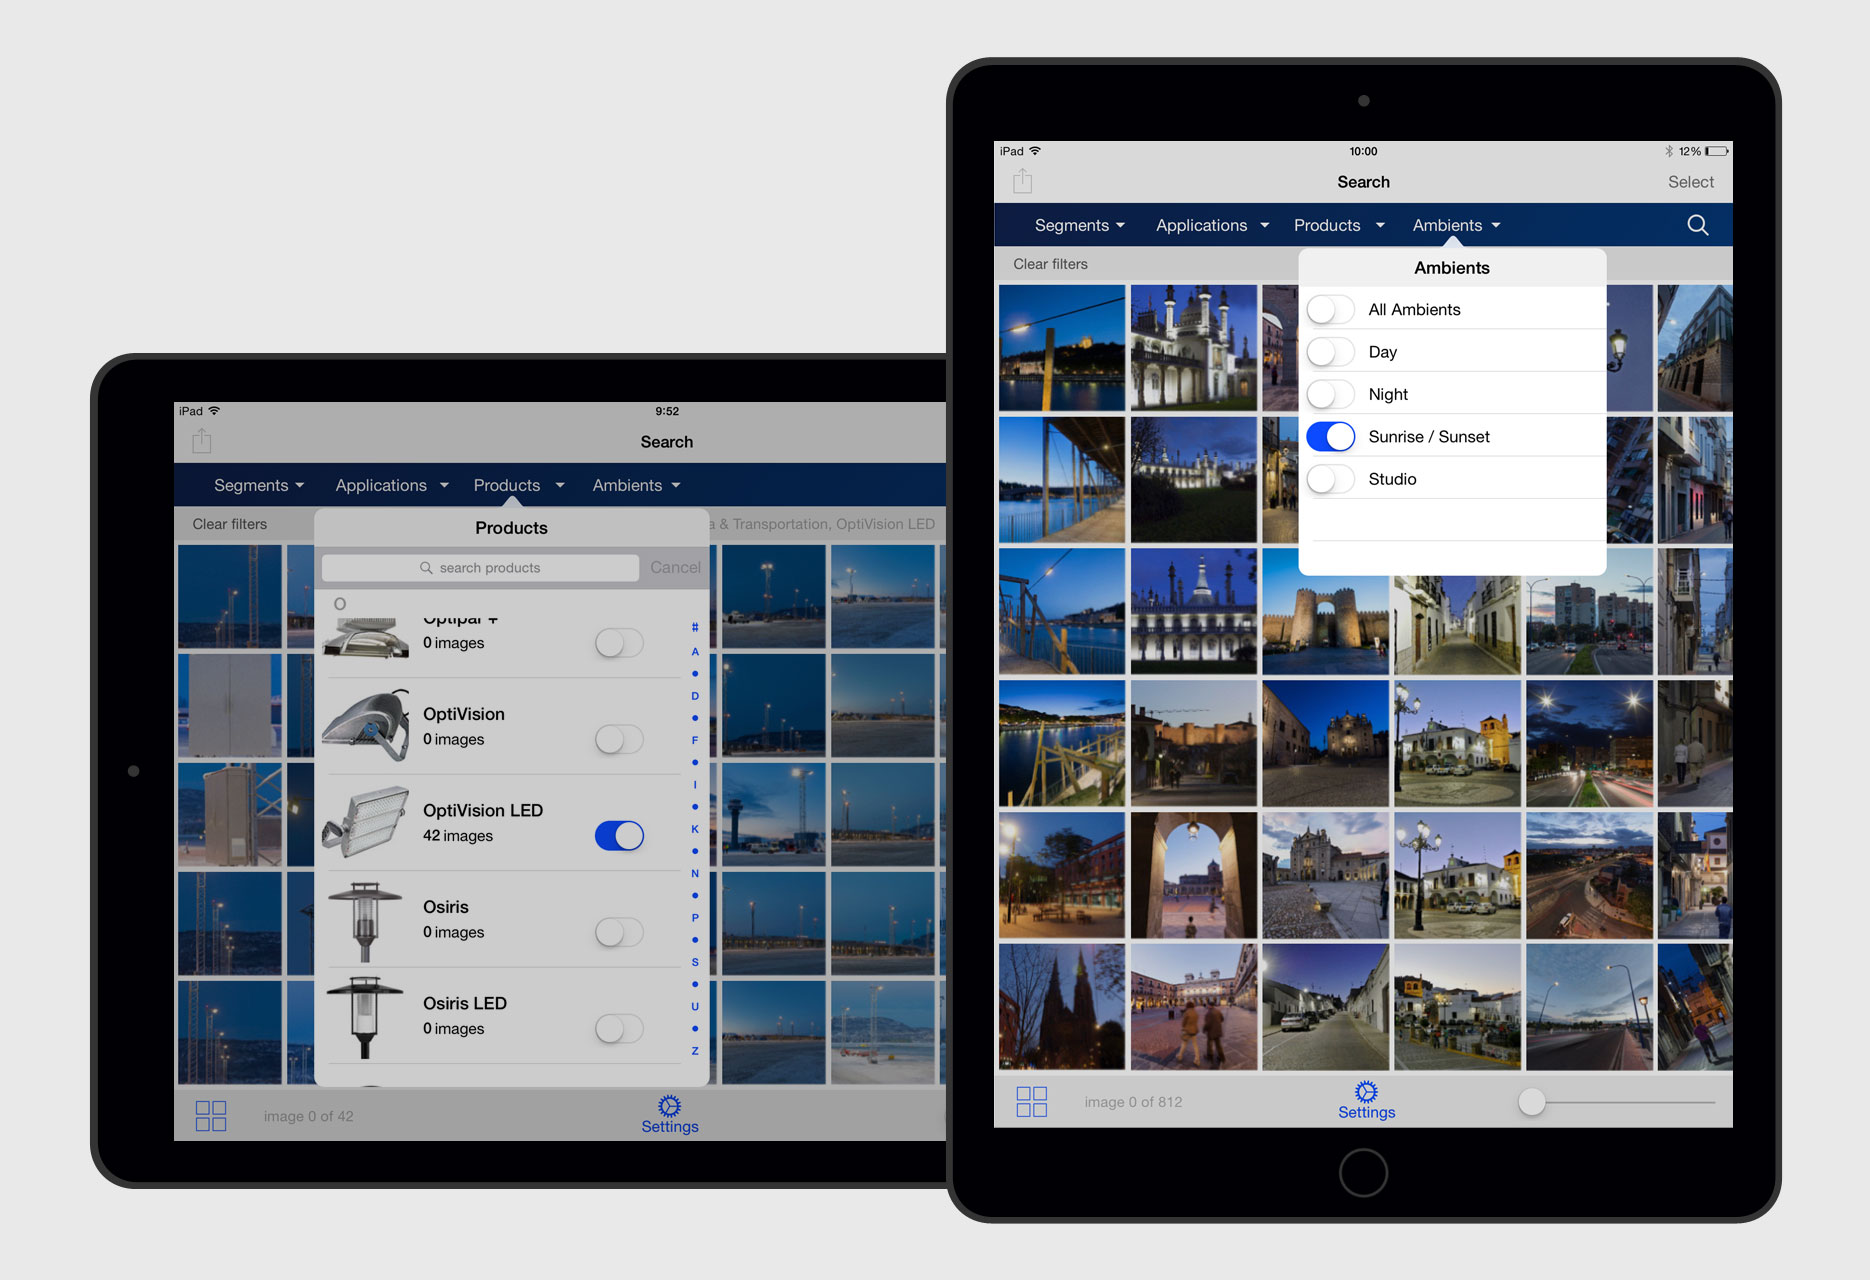 Aplicación iPad Banco de Imágenes Philips - app móvil / desarrollo iOS - 2015